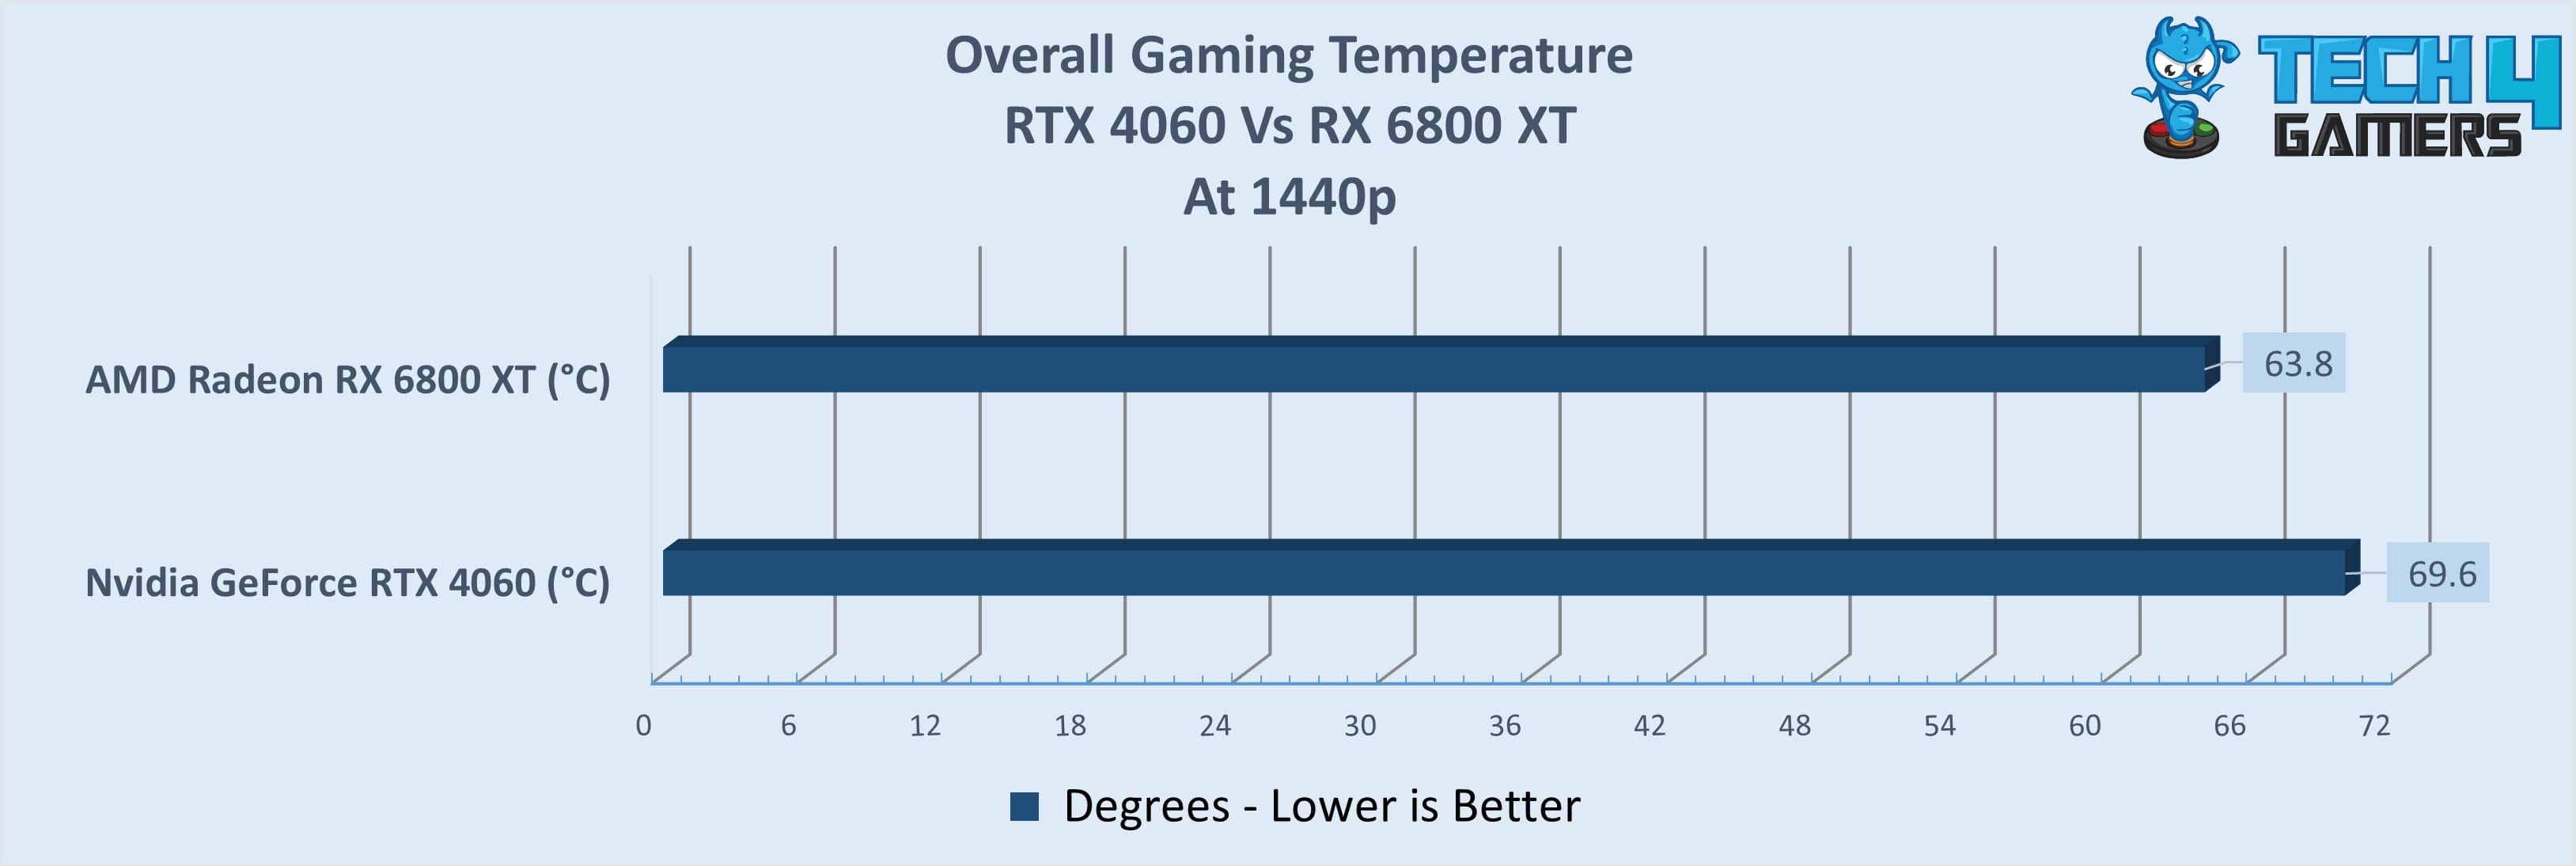 Gaming Temperatures